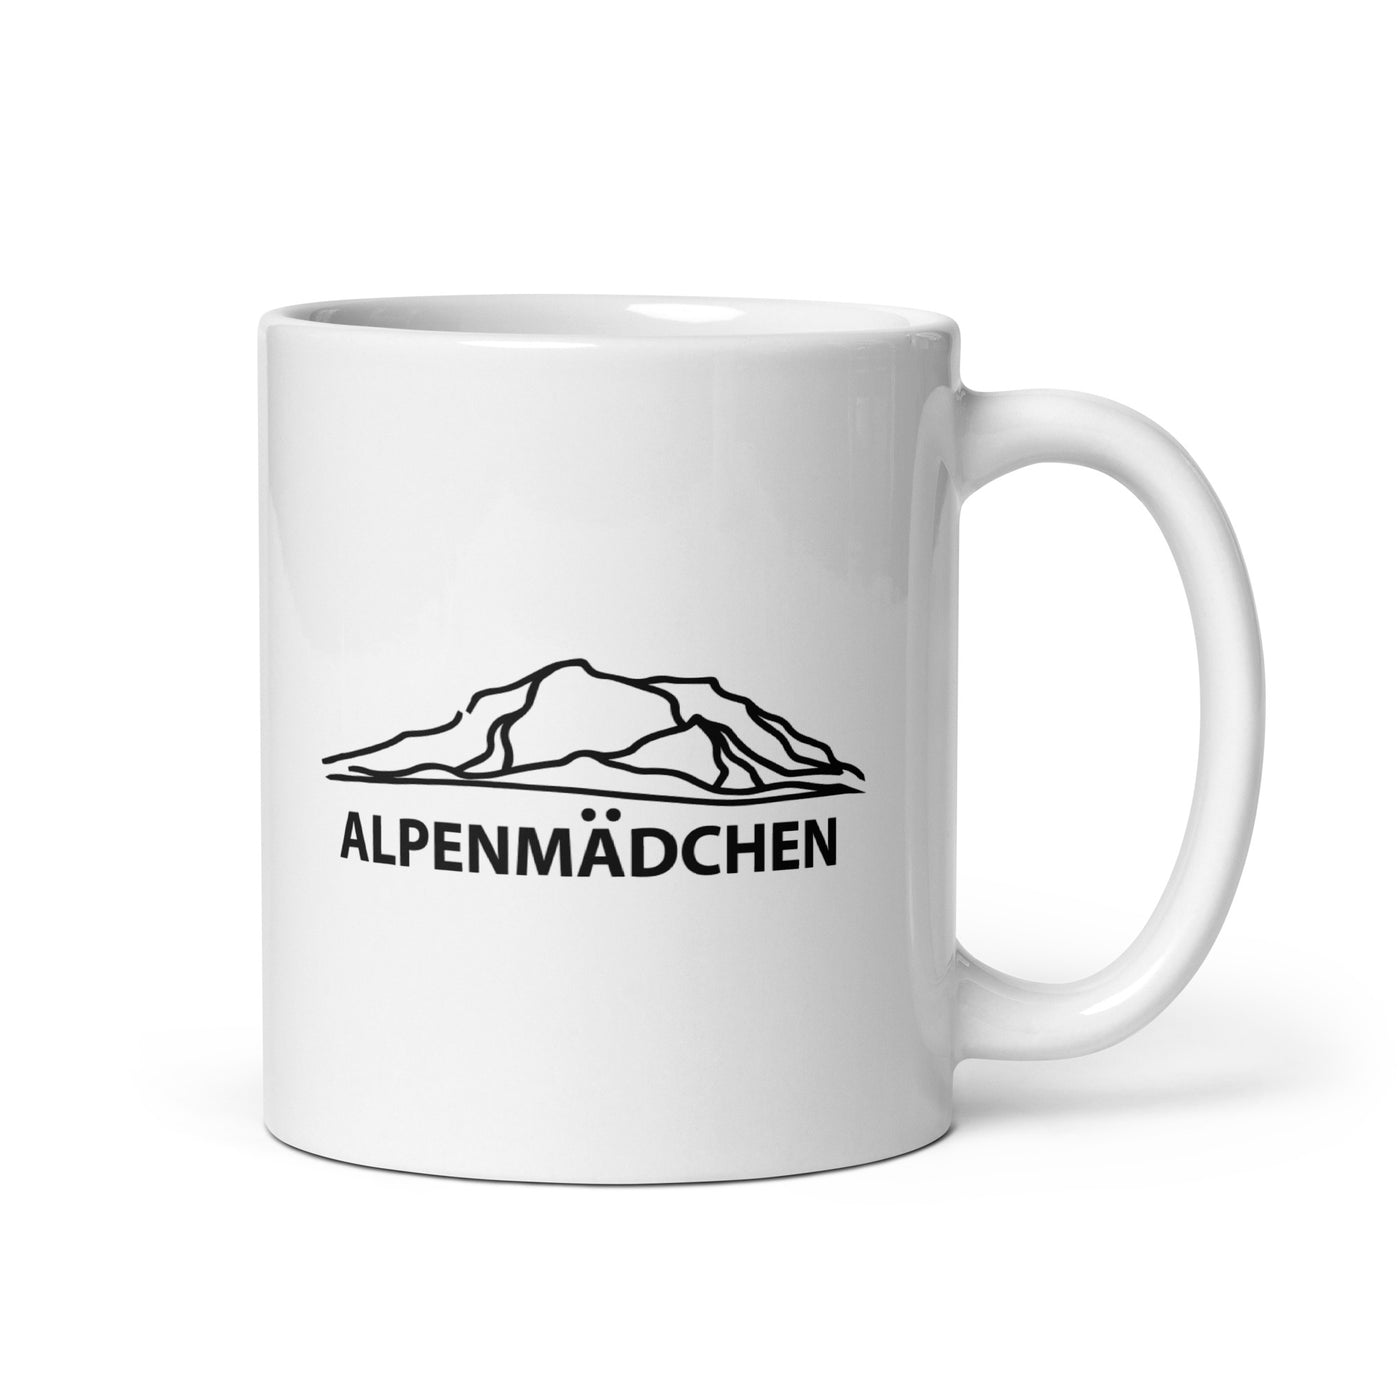 Alpenmadchen (9) - Tasse berge